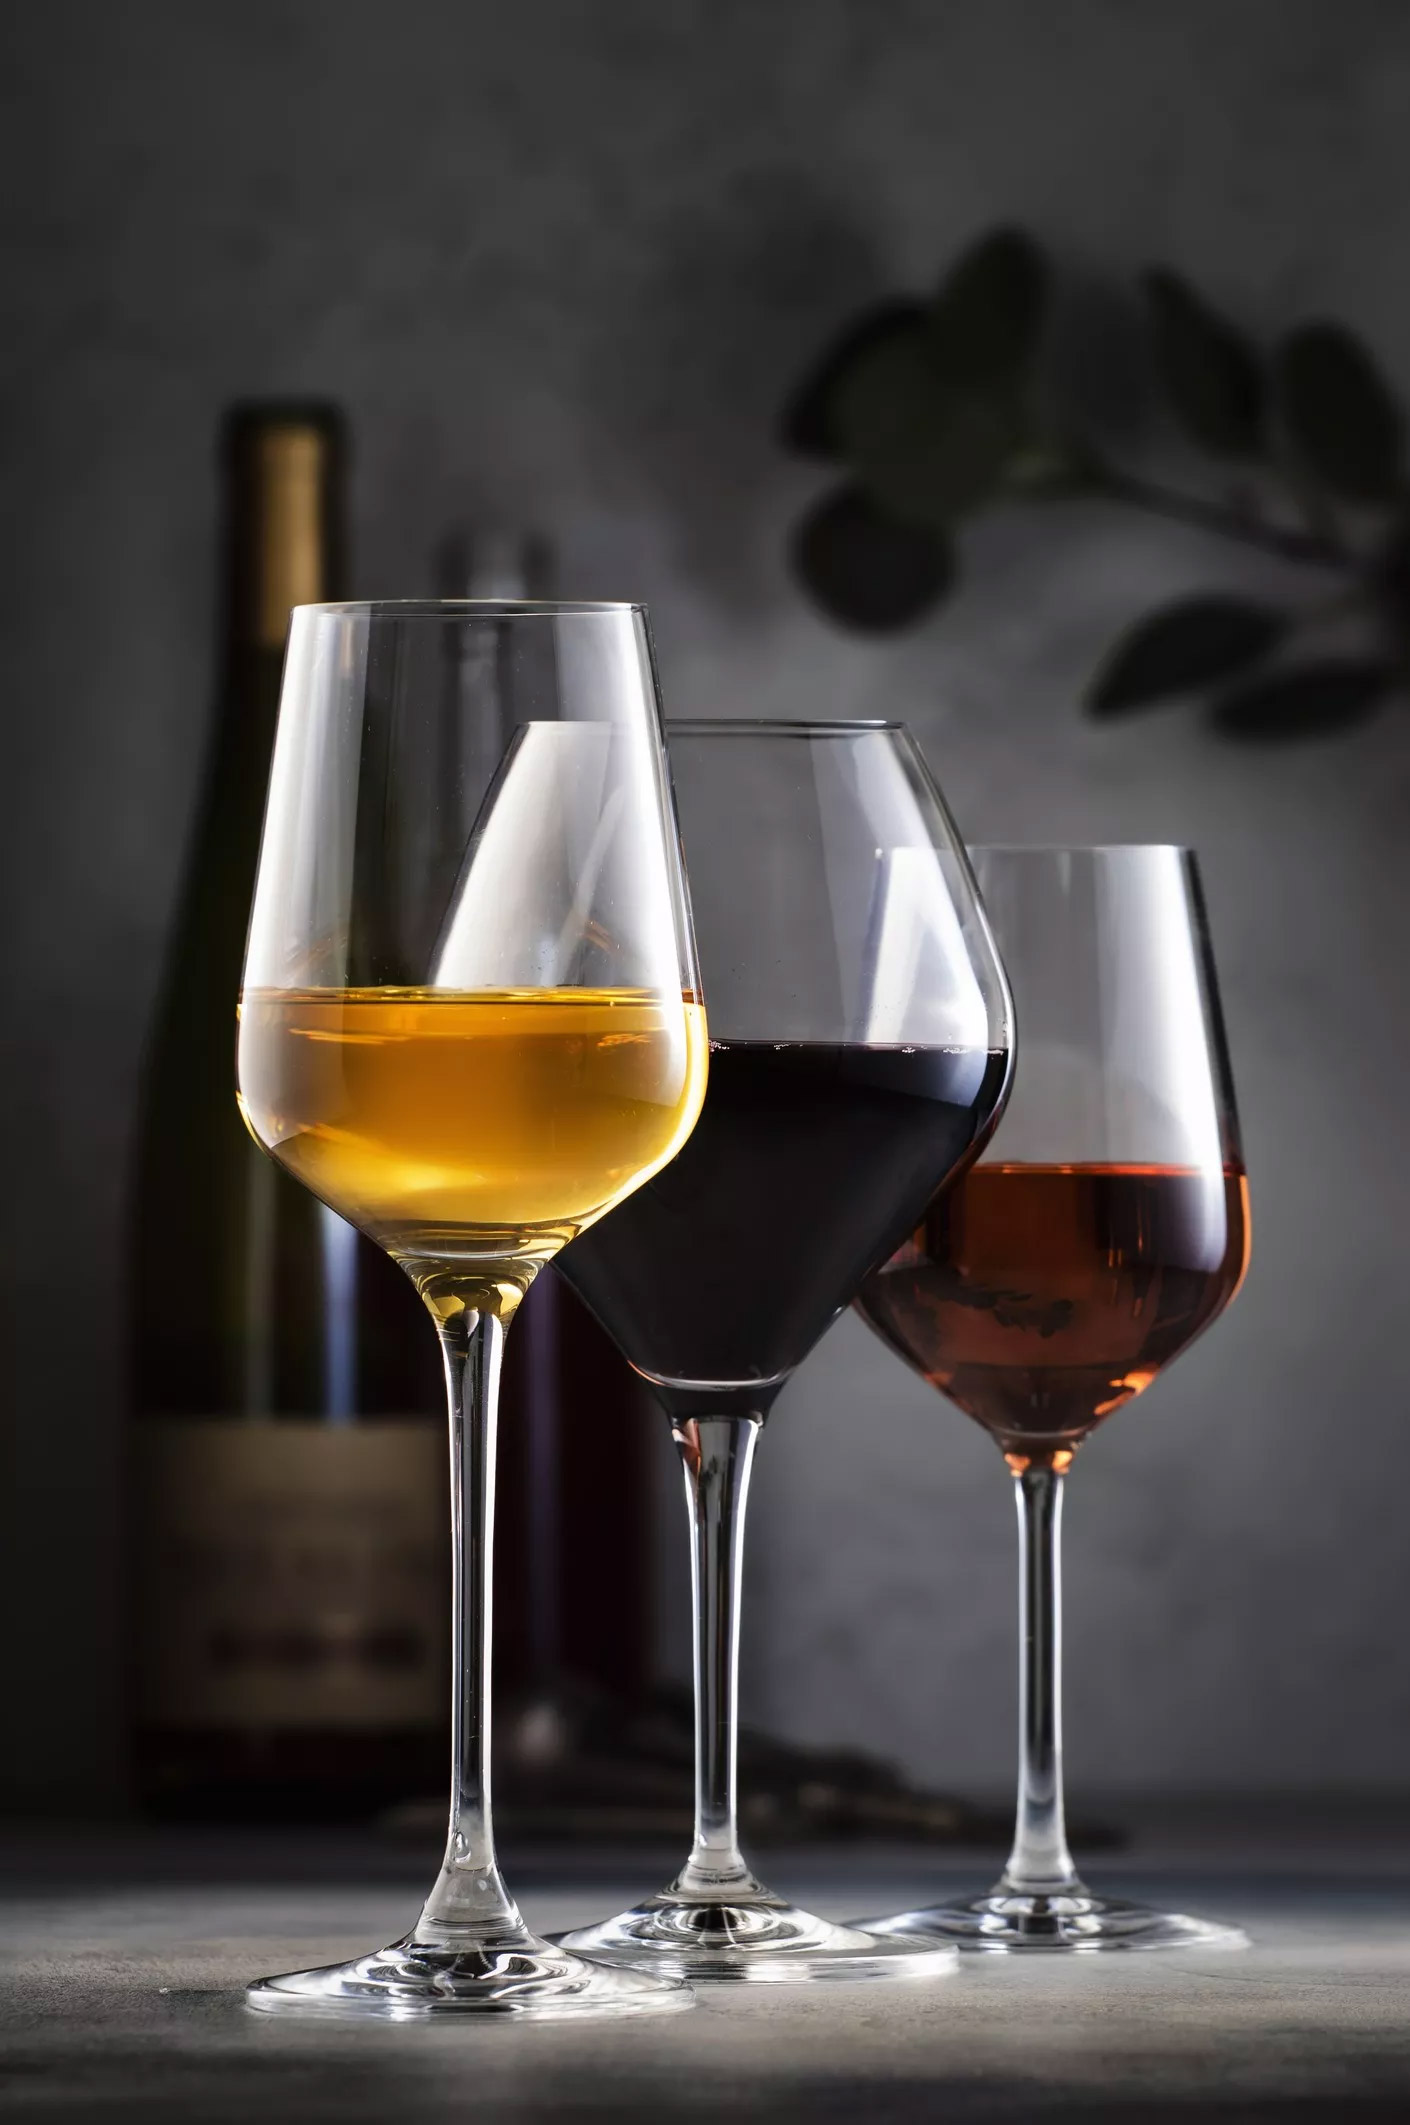 Πώς αντιλαμβανόμαστε αρώματα και γεύσεις στο κρασί; Αυτά είναι τα μυστικά της γευσιγνωσίας